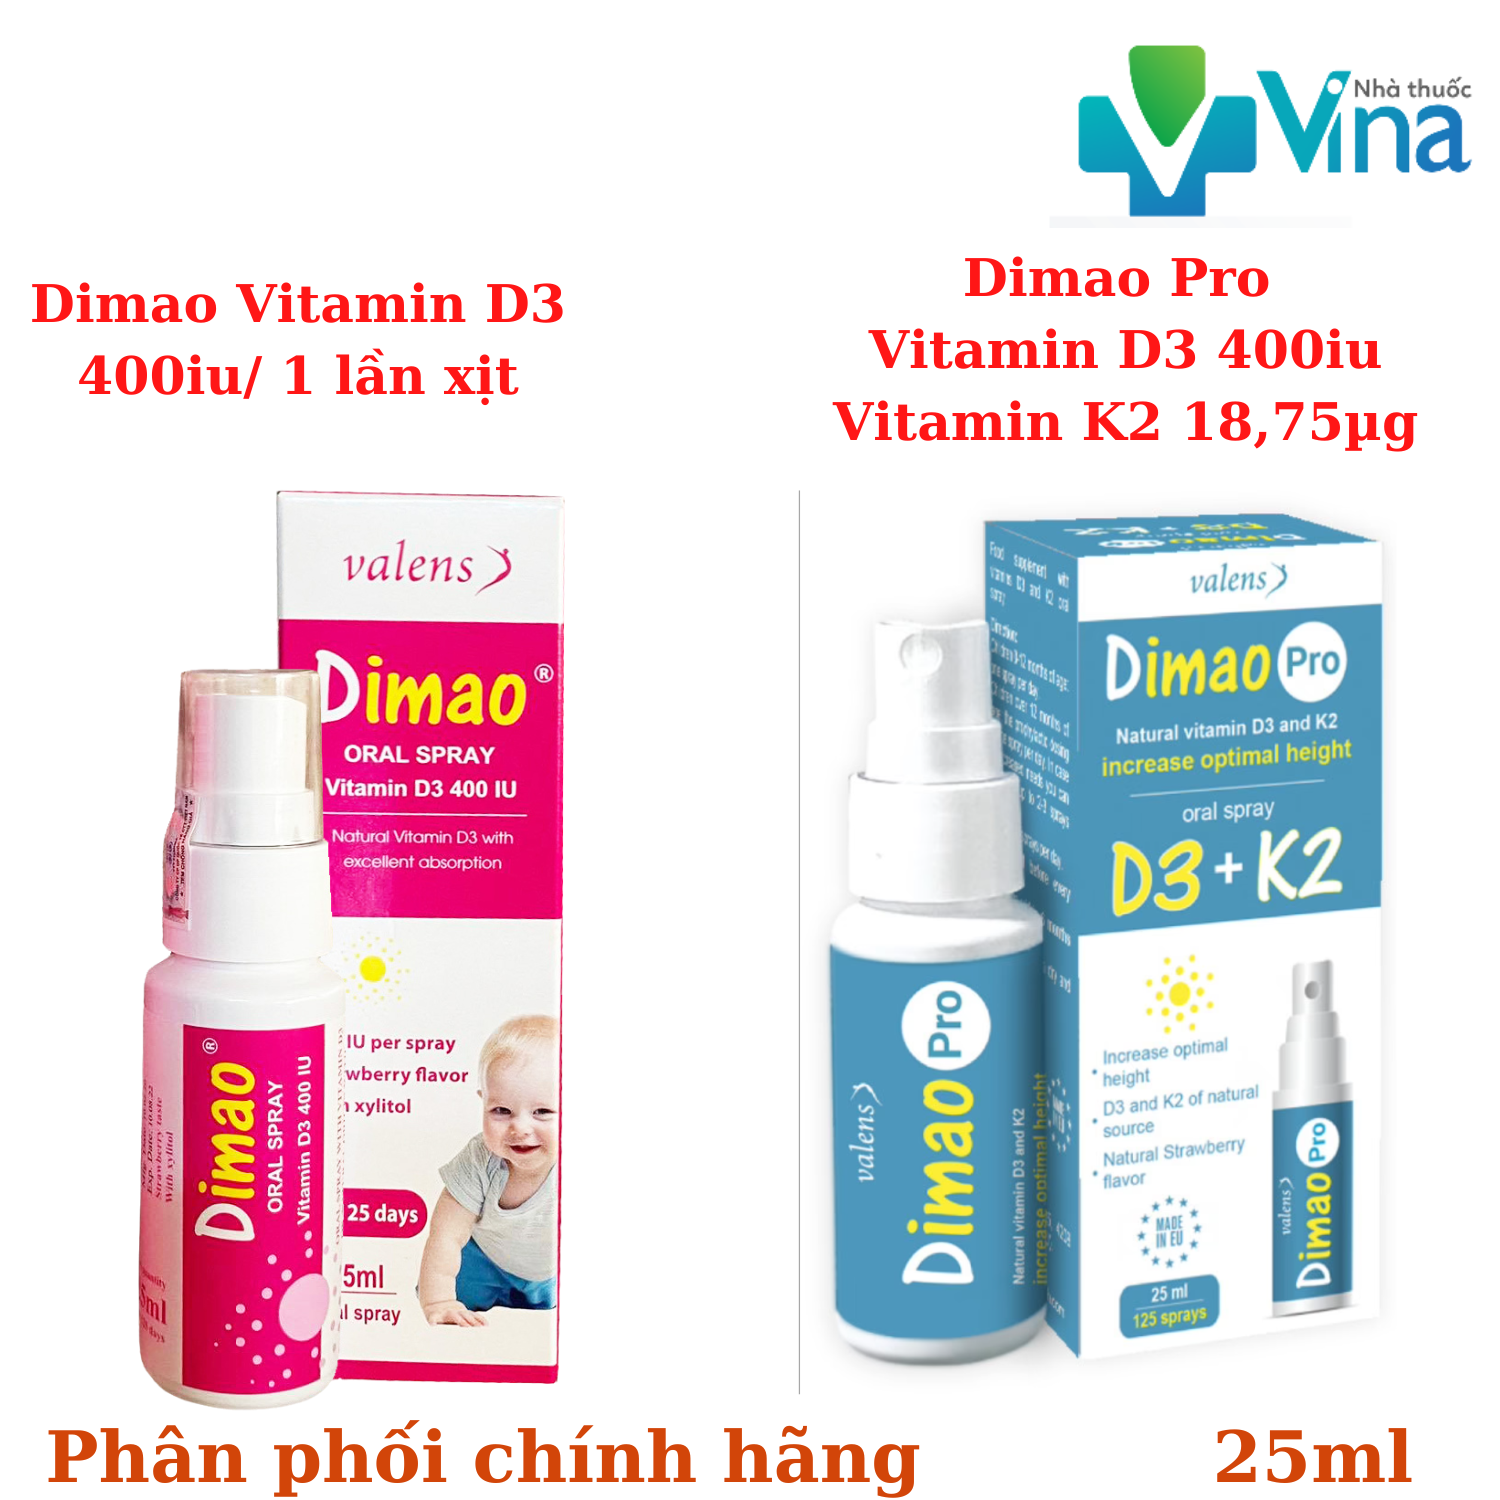 Dimao - Vitamin D3 Dạng Xịt 400IU Hàng Nhập Khẩu Châu Âu Hiệu Quả Và Hấp